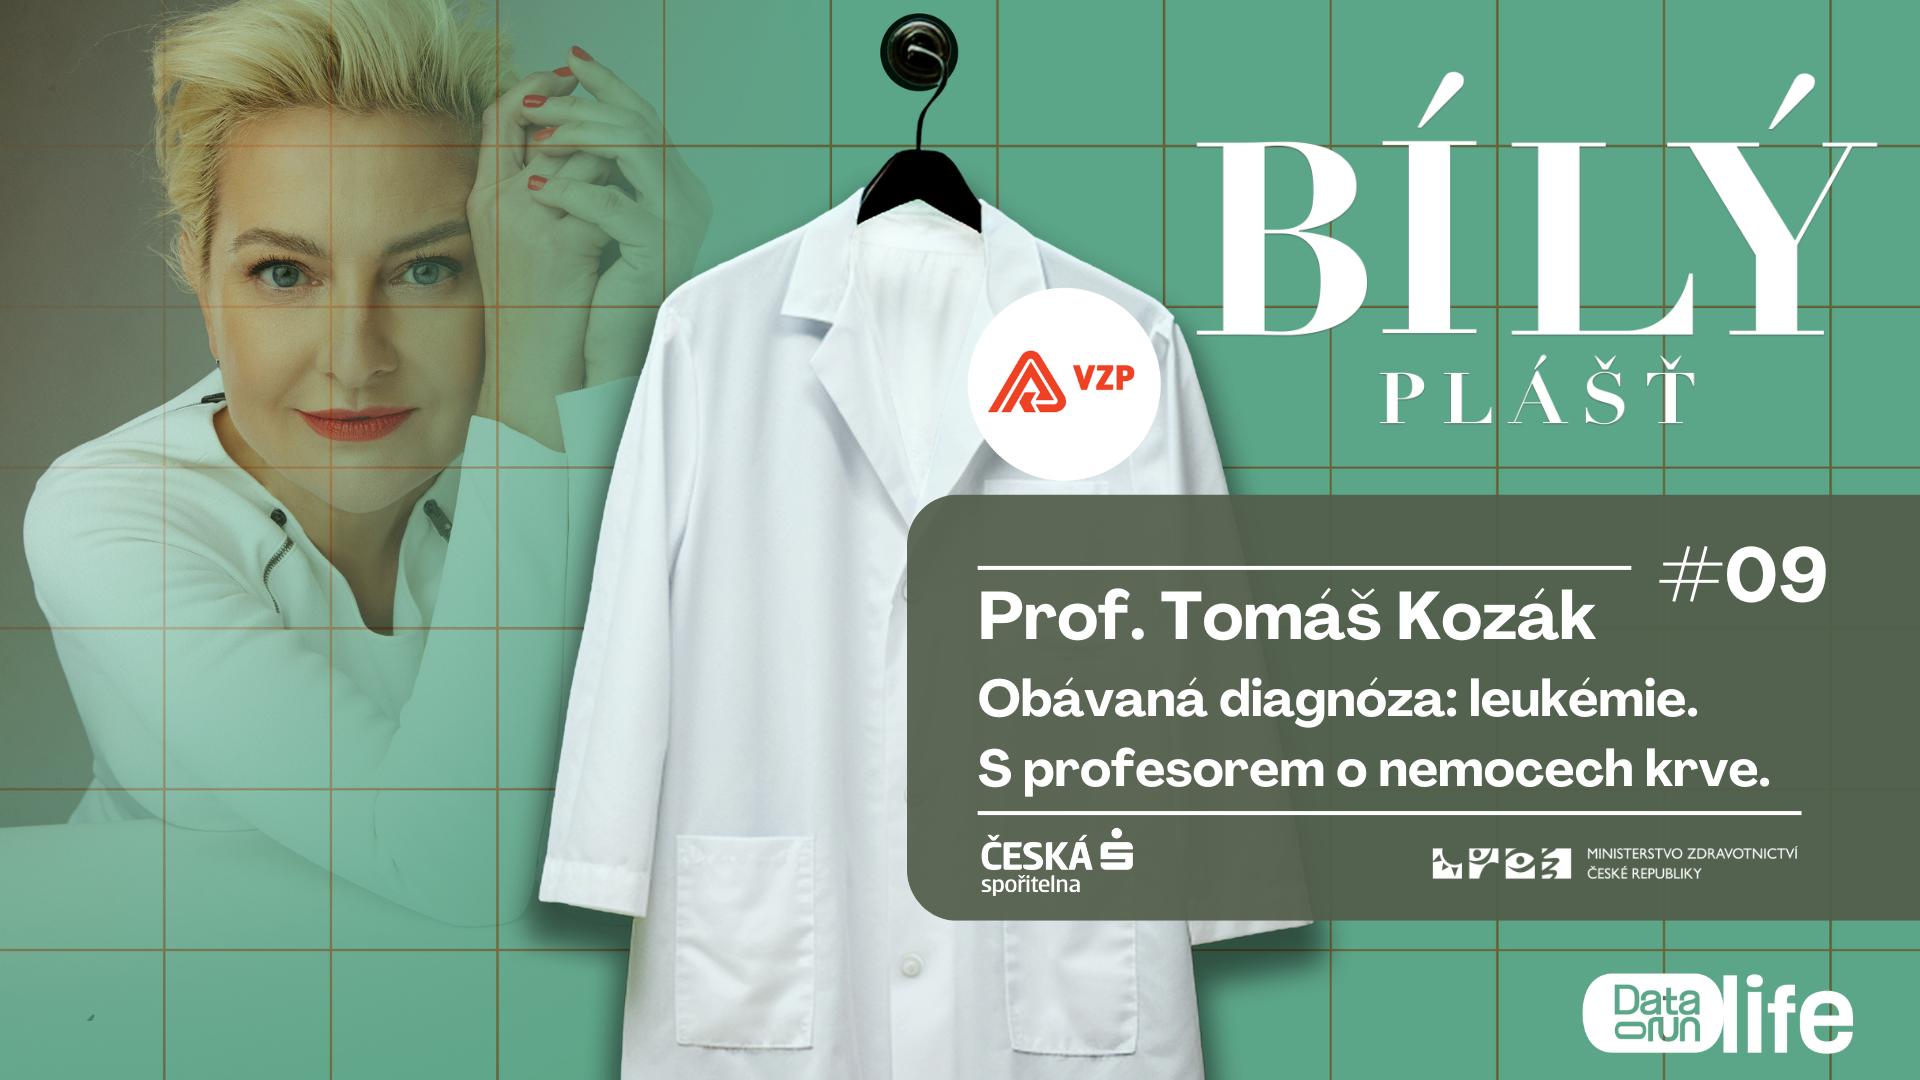 Preview of Obávaná diagnóza: leukémie. S prof. Tomášem Kozákem o nemocech krve